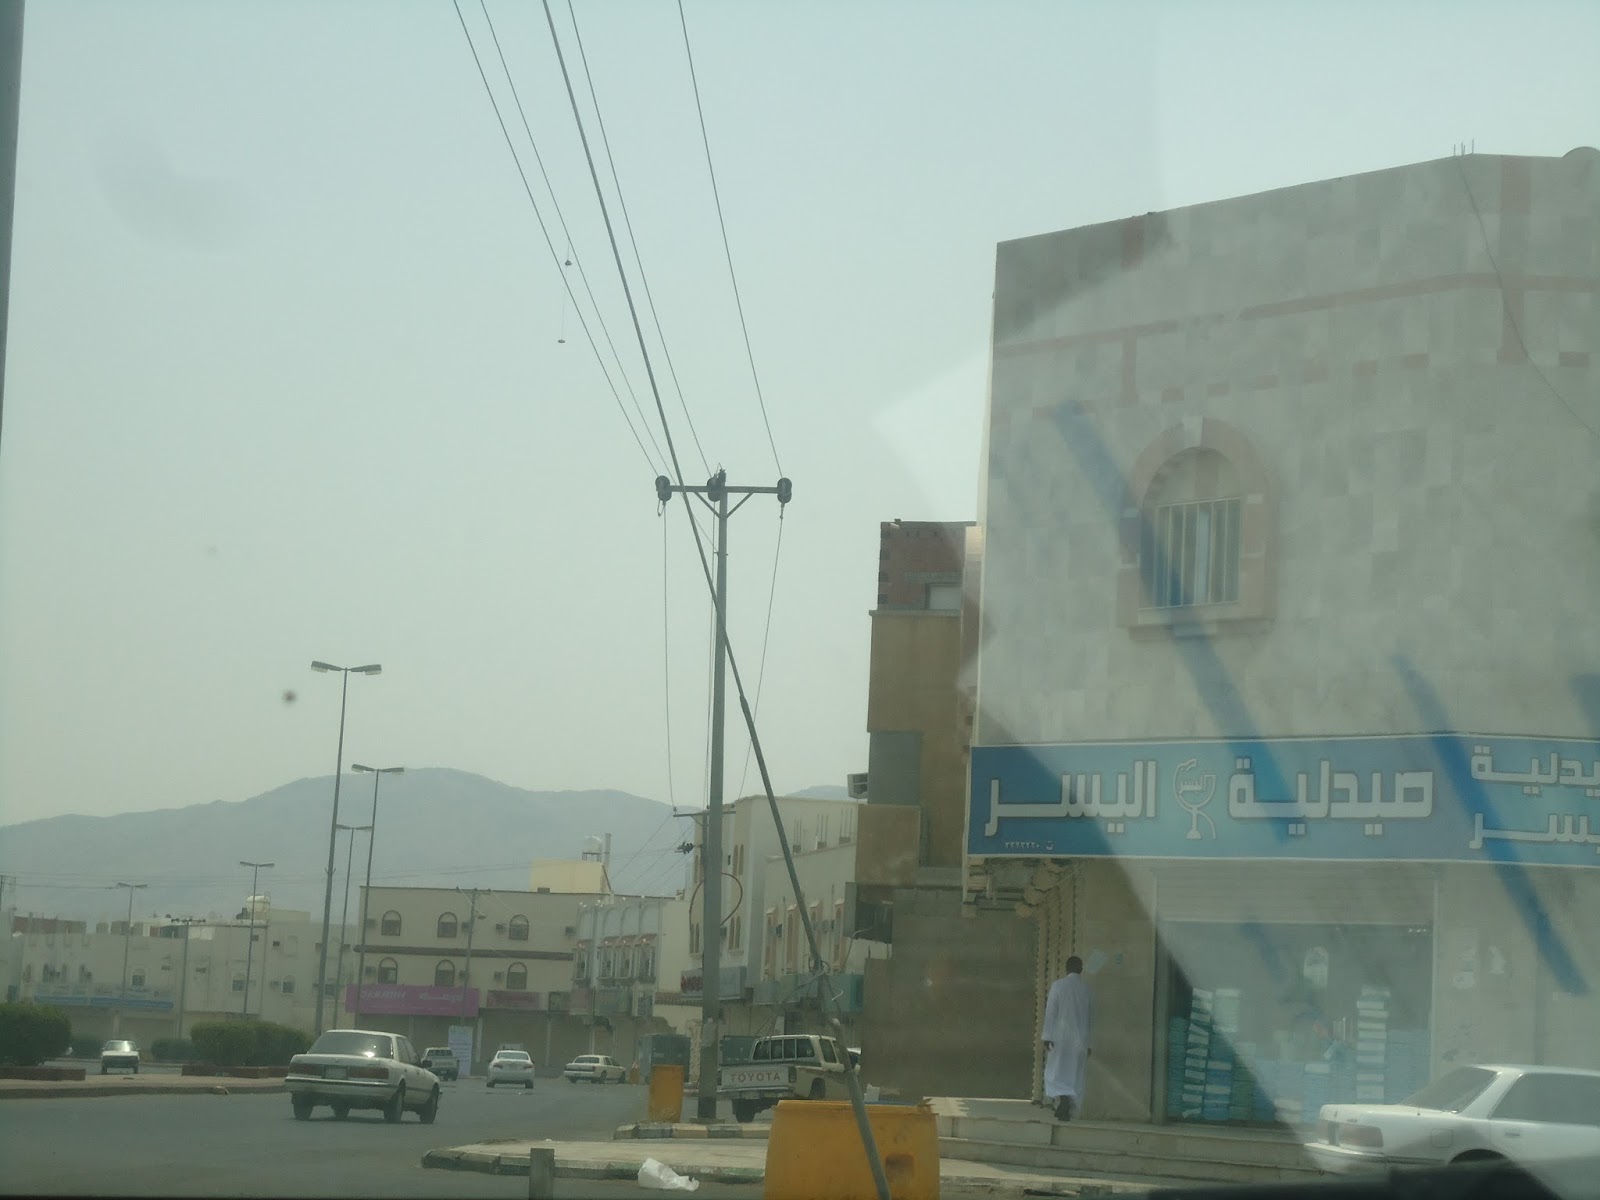 Blog of Traveller: Badr, Saudi Arabia